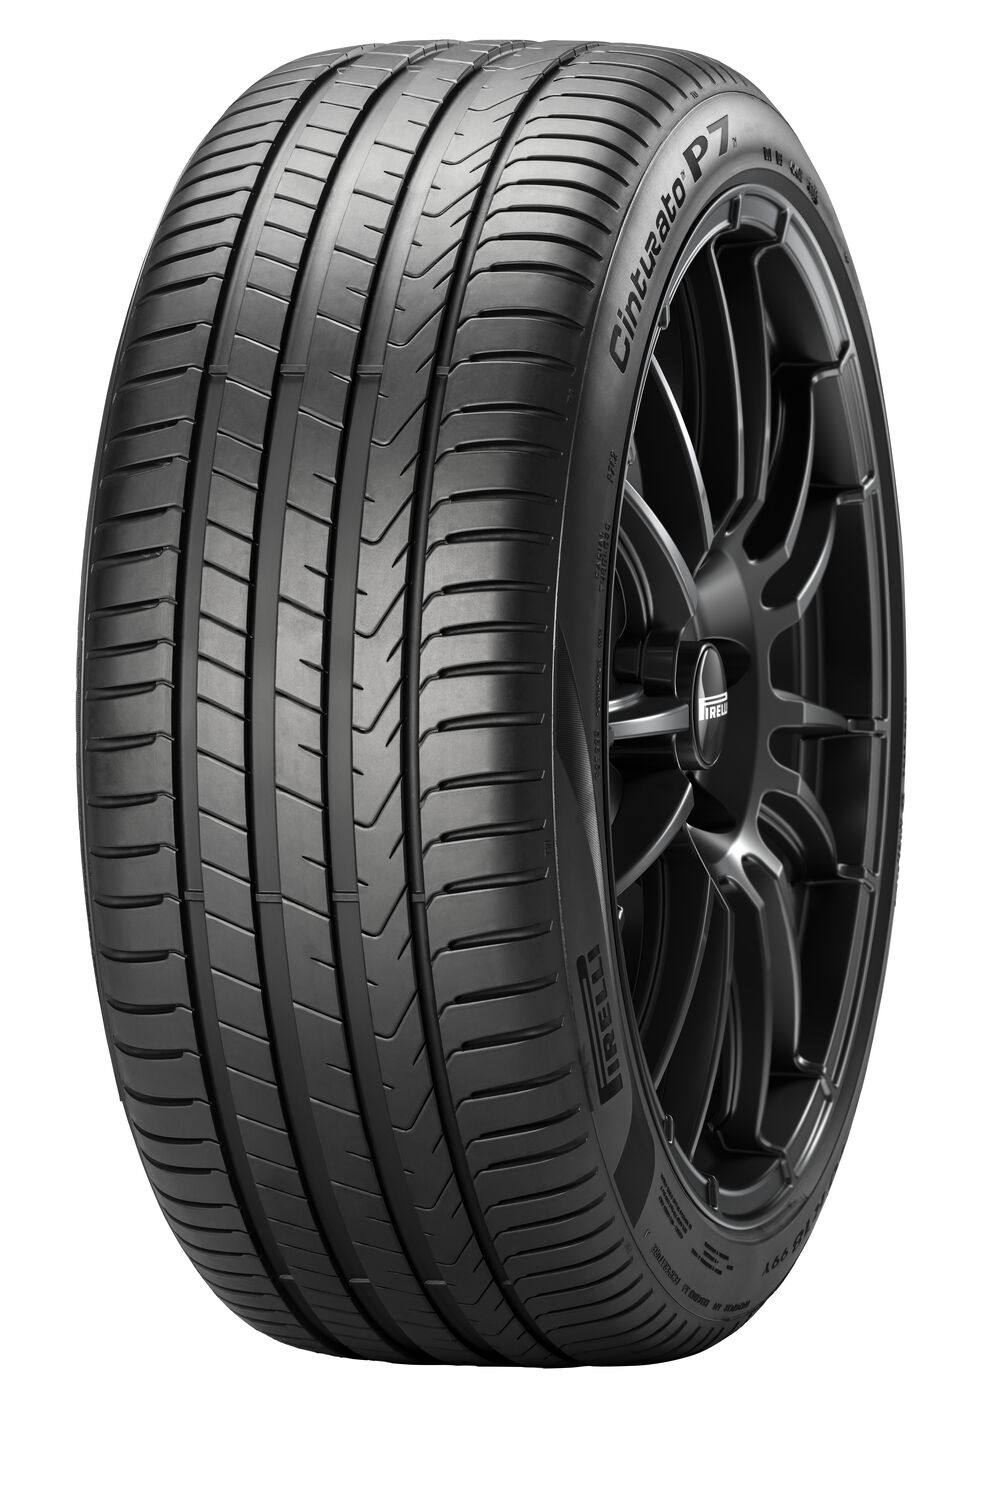 Gomme Nuove Pirelli 205/50 R17 89H P7 CINTURATO P7C2 pneumatici nuovi Estivo